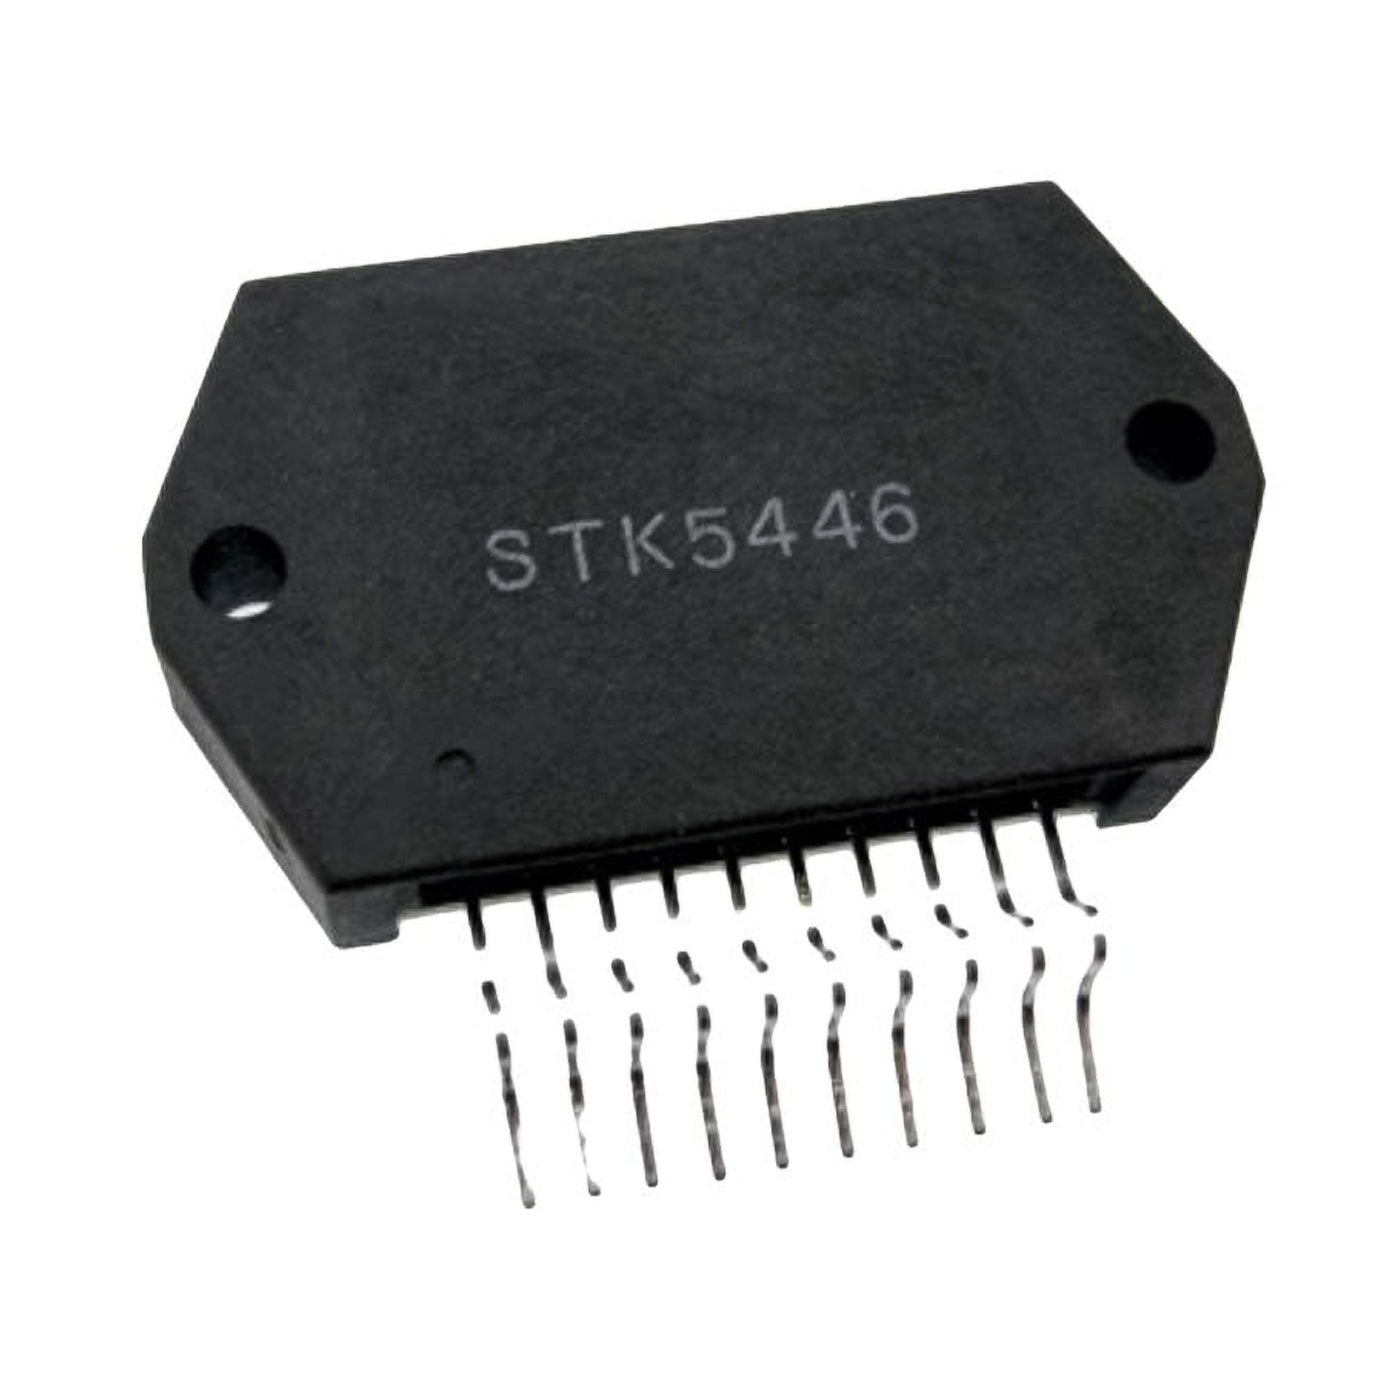 STK5446 componente elettronico, circuito integrato, transistor, 10 contatti